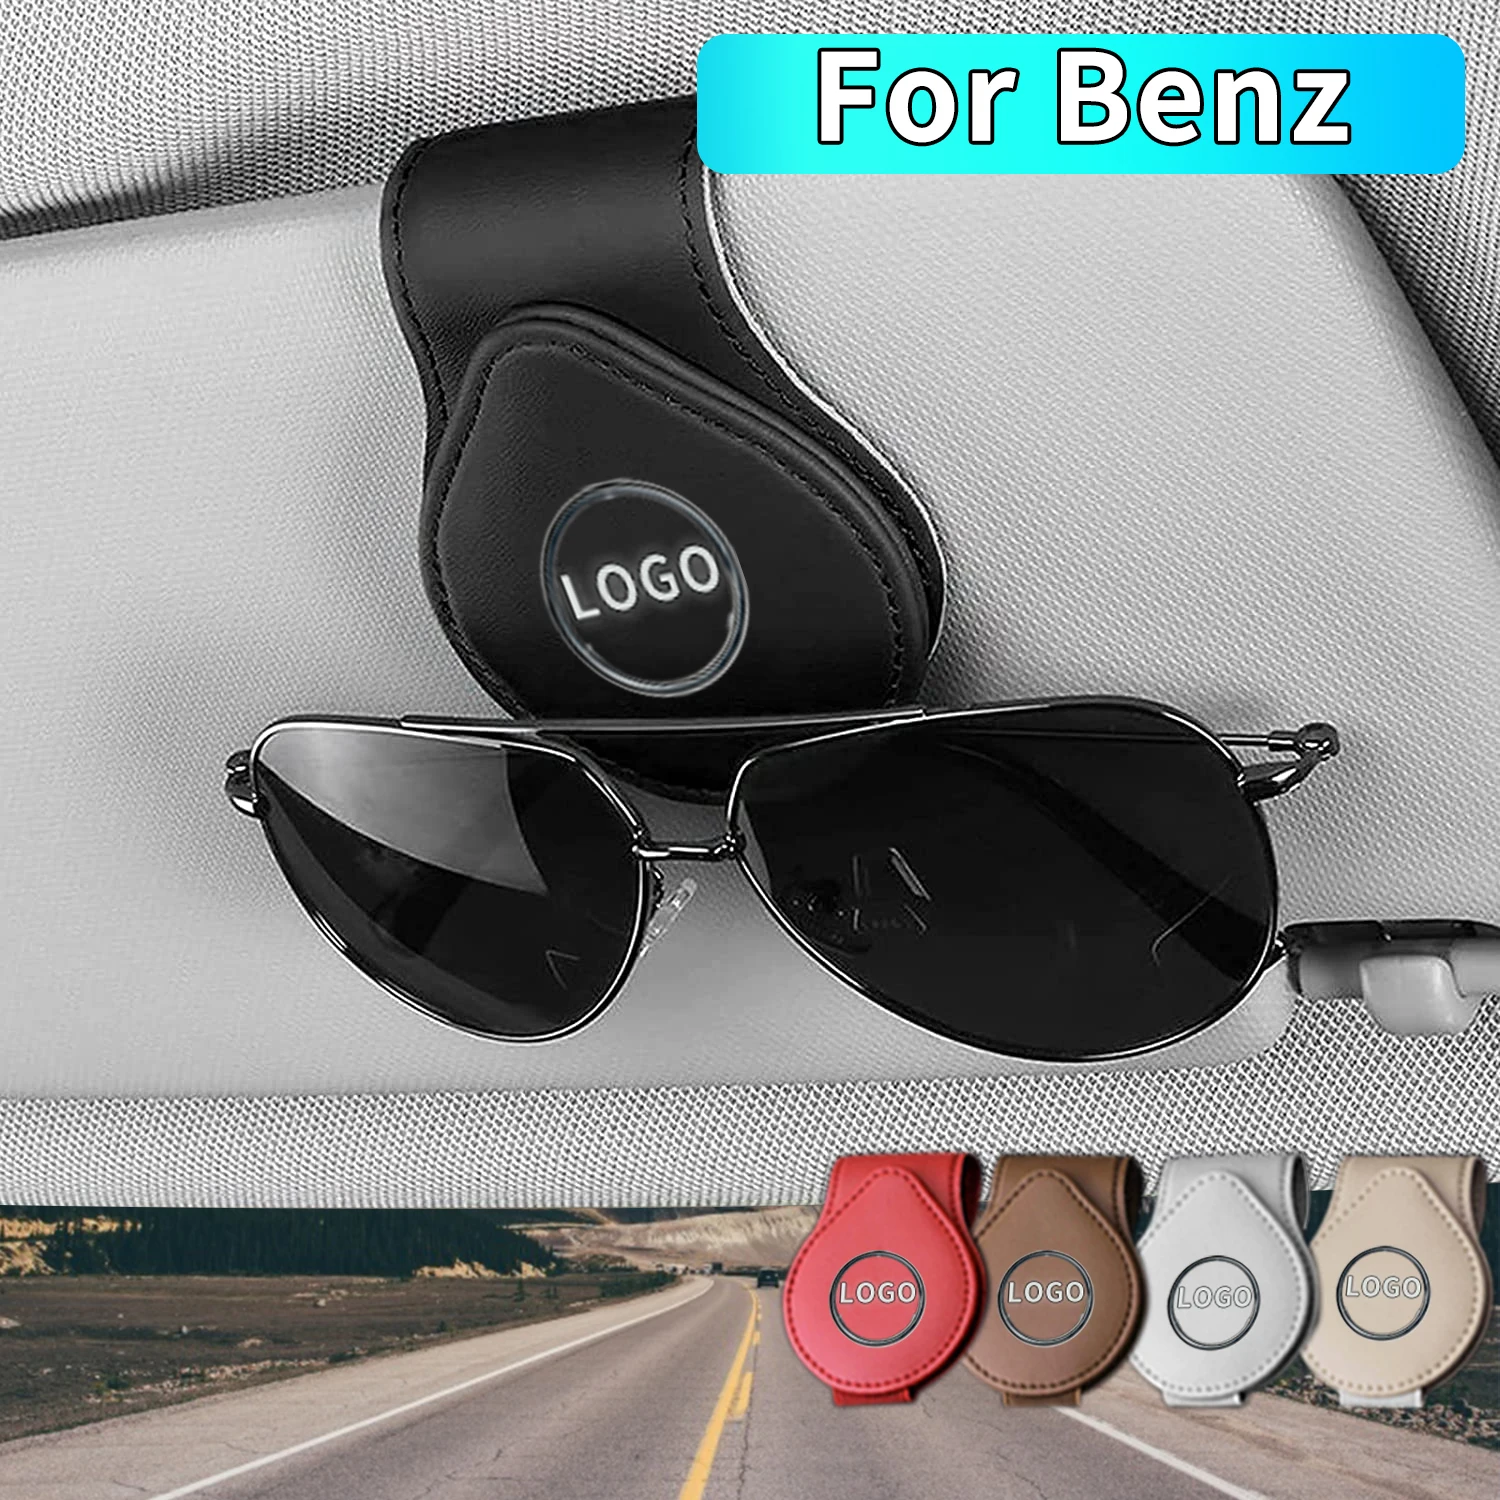 Custodia per occhiali per Auto 2 pezzi Logo Auto visiera parasole supporto per occhiali occhiali da sole Clip per Mercedes Benz GLA/GLB/CLA/E/classe S E300 E350 C300